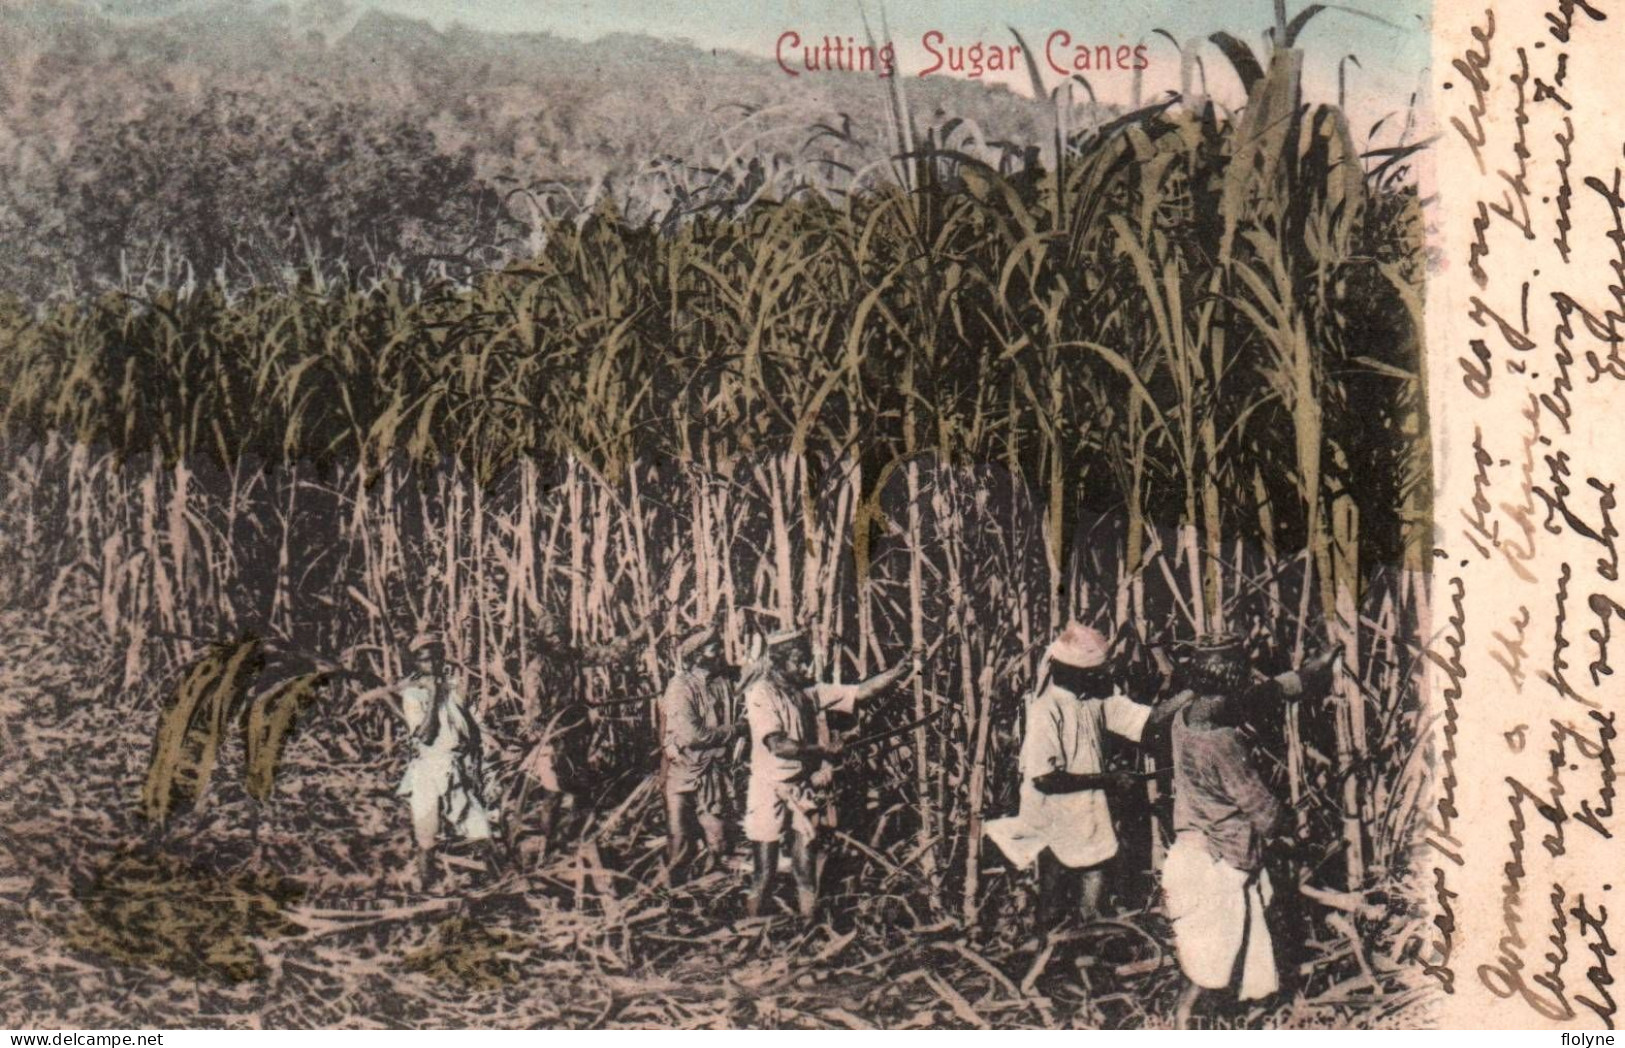 Durban ? - Cutting Sugar Canes - Cannes à Sucre - Afrique Du Sud South Africa Transvaal - Afrique Du Sud